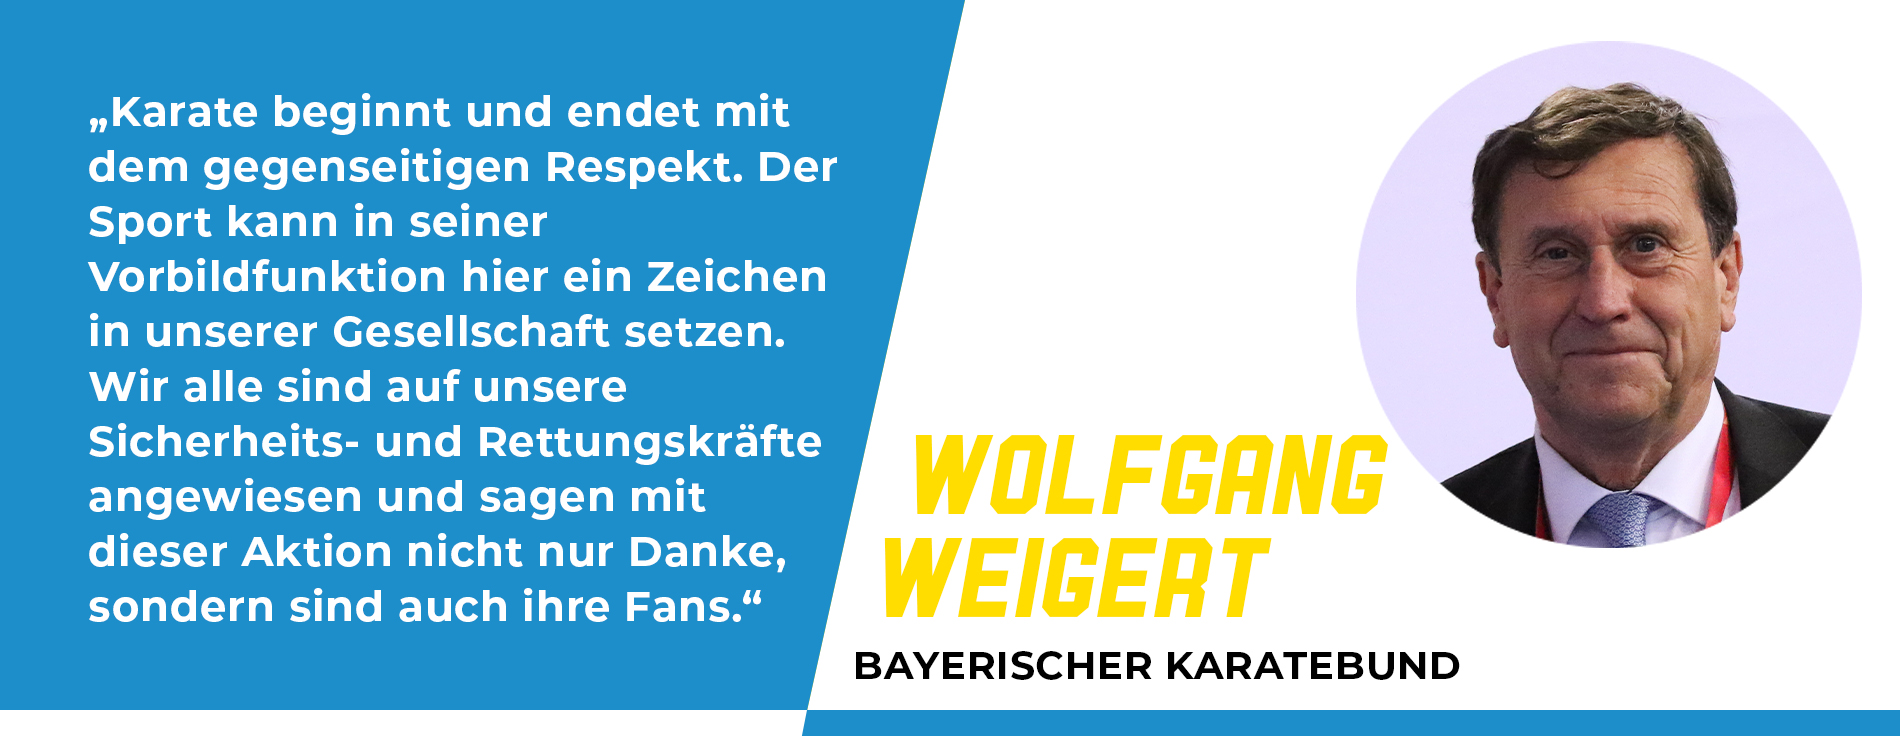 Statement Wolfgang Weigert, Bayerischer Karatebund: „Karate beginnt und endet mit dem gegenseitigen Respekt. Der Sport kann in seiner Vorbildfunktion hier ein Zeichen in unserer Gesellschaft setzen. Wir alle sind auf unsere Sicherheits- und Rettungskräfte angewiesen und sagen mit dieser Aktion nicht nur Danke, sondern sind auch ihre Fans.“